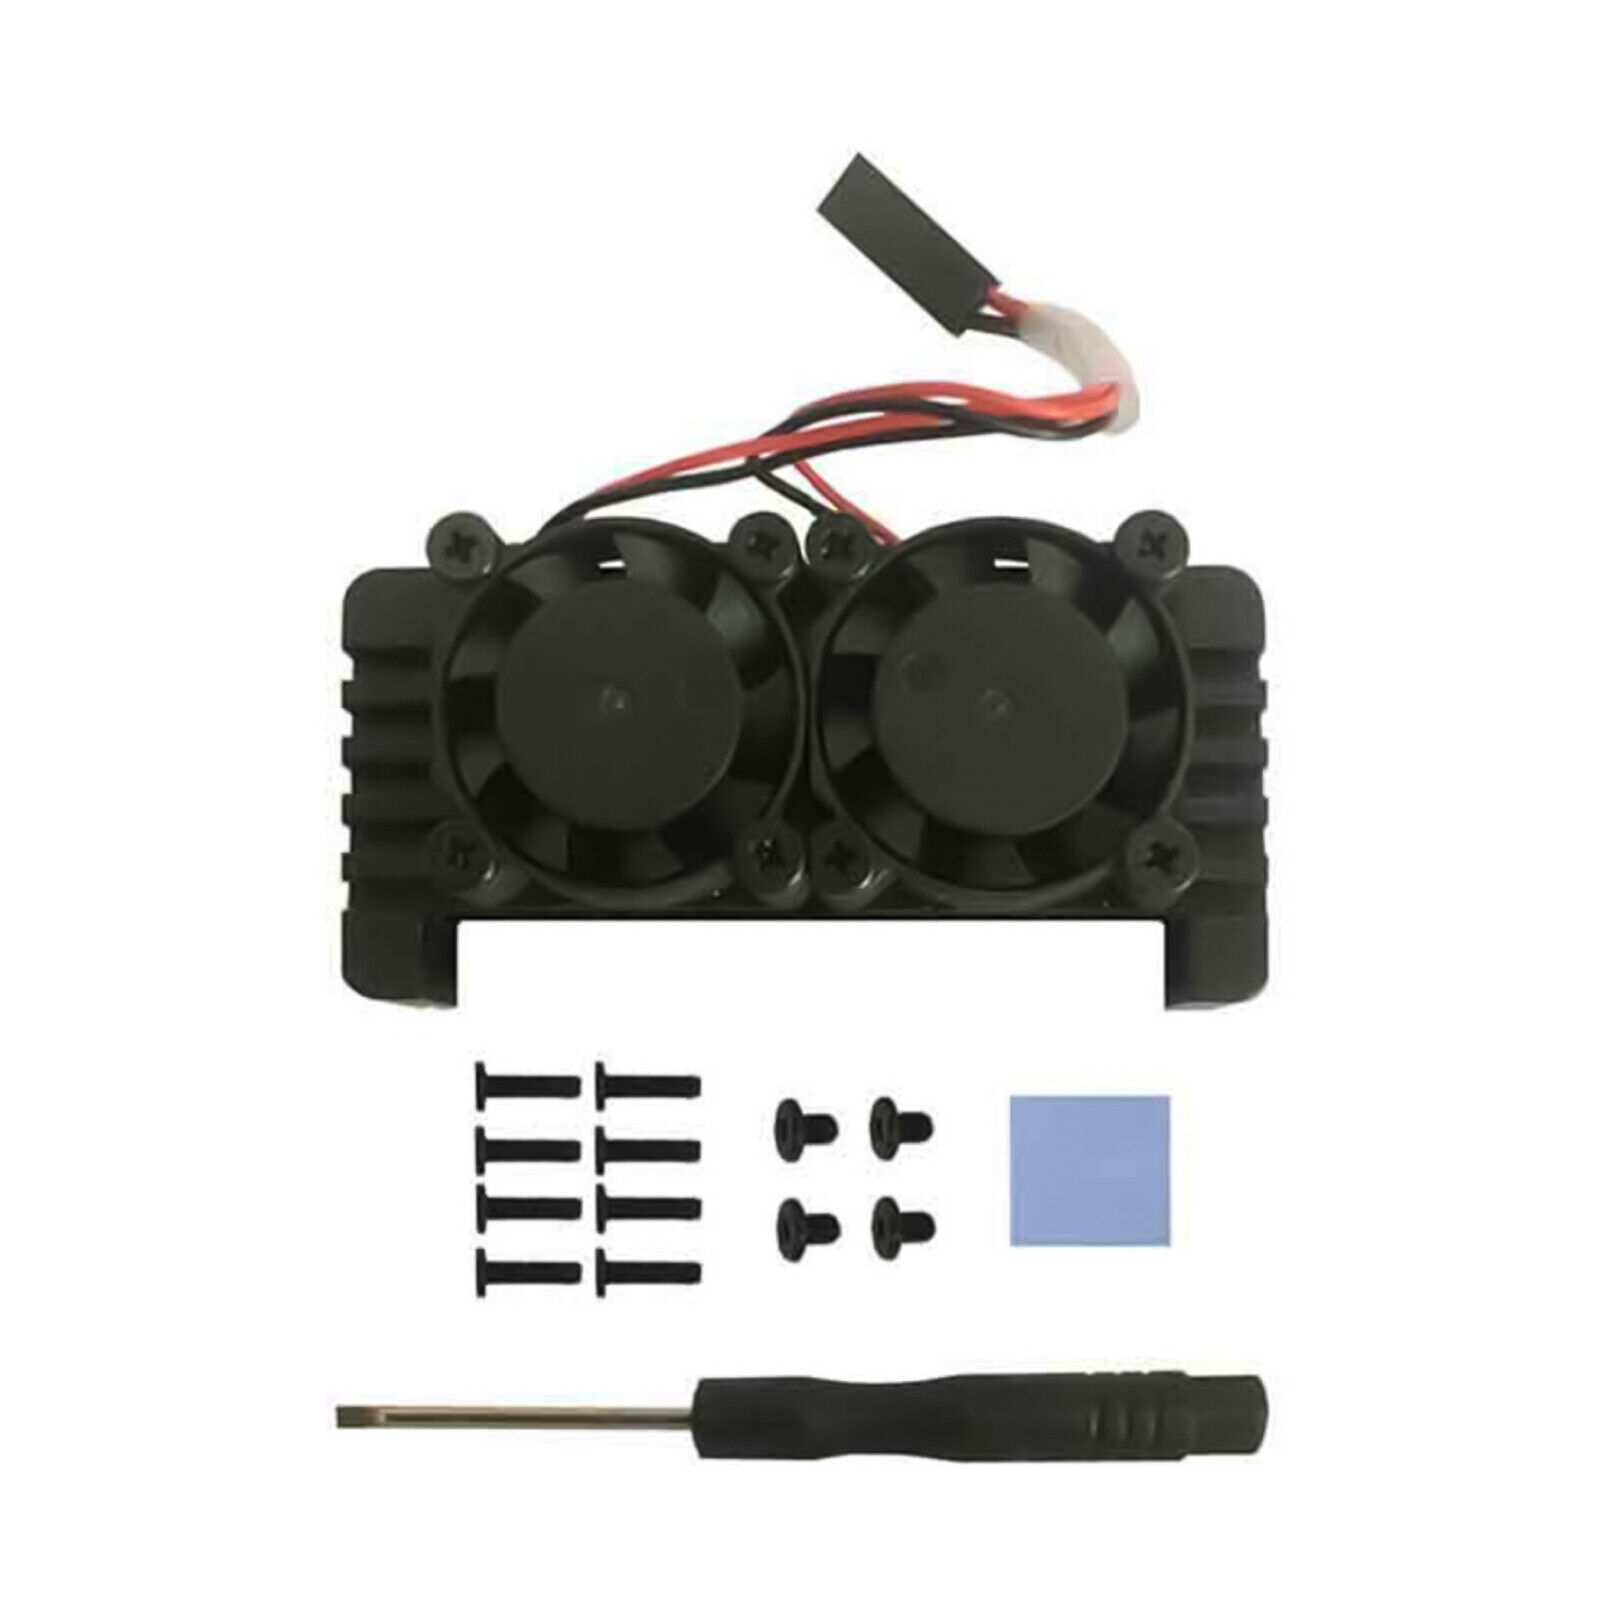 Dual Cooling Fan Aluminum Heatsink Case Shell Kit for Raspberry Pi Zero 2W